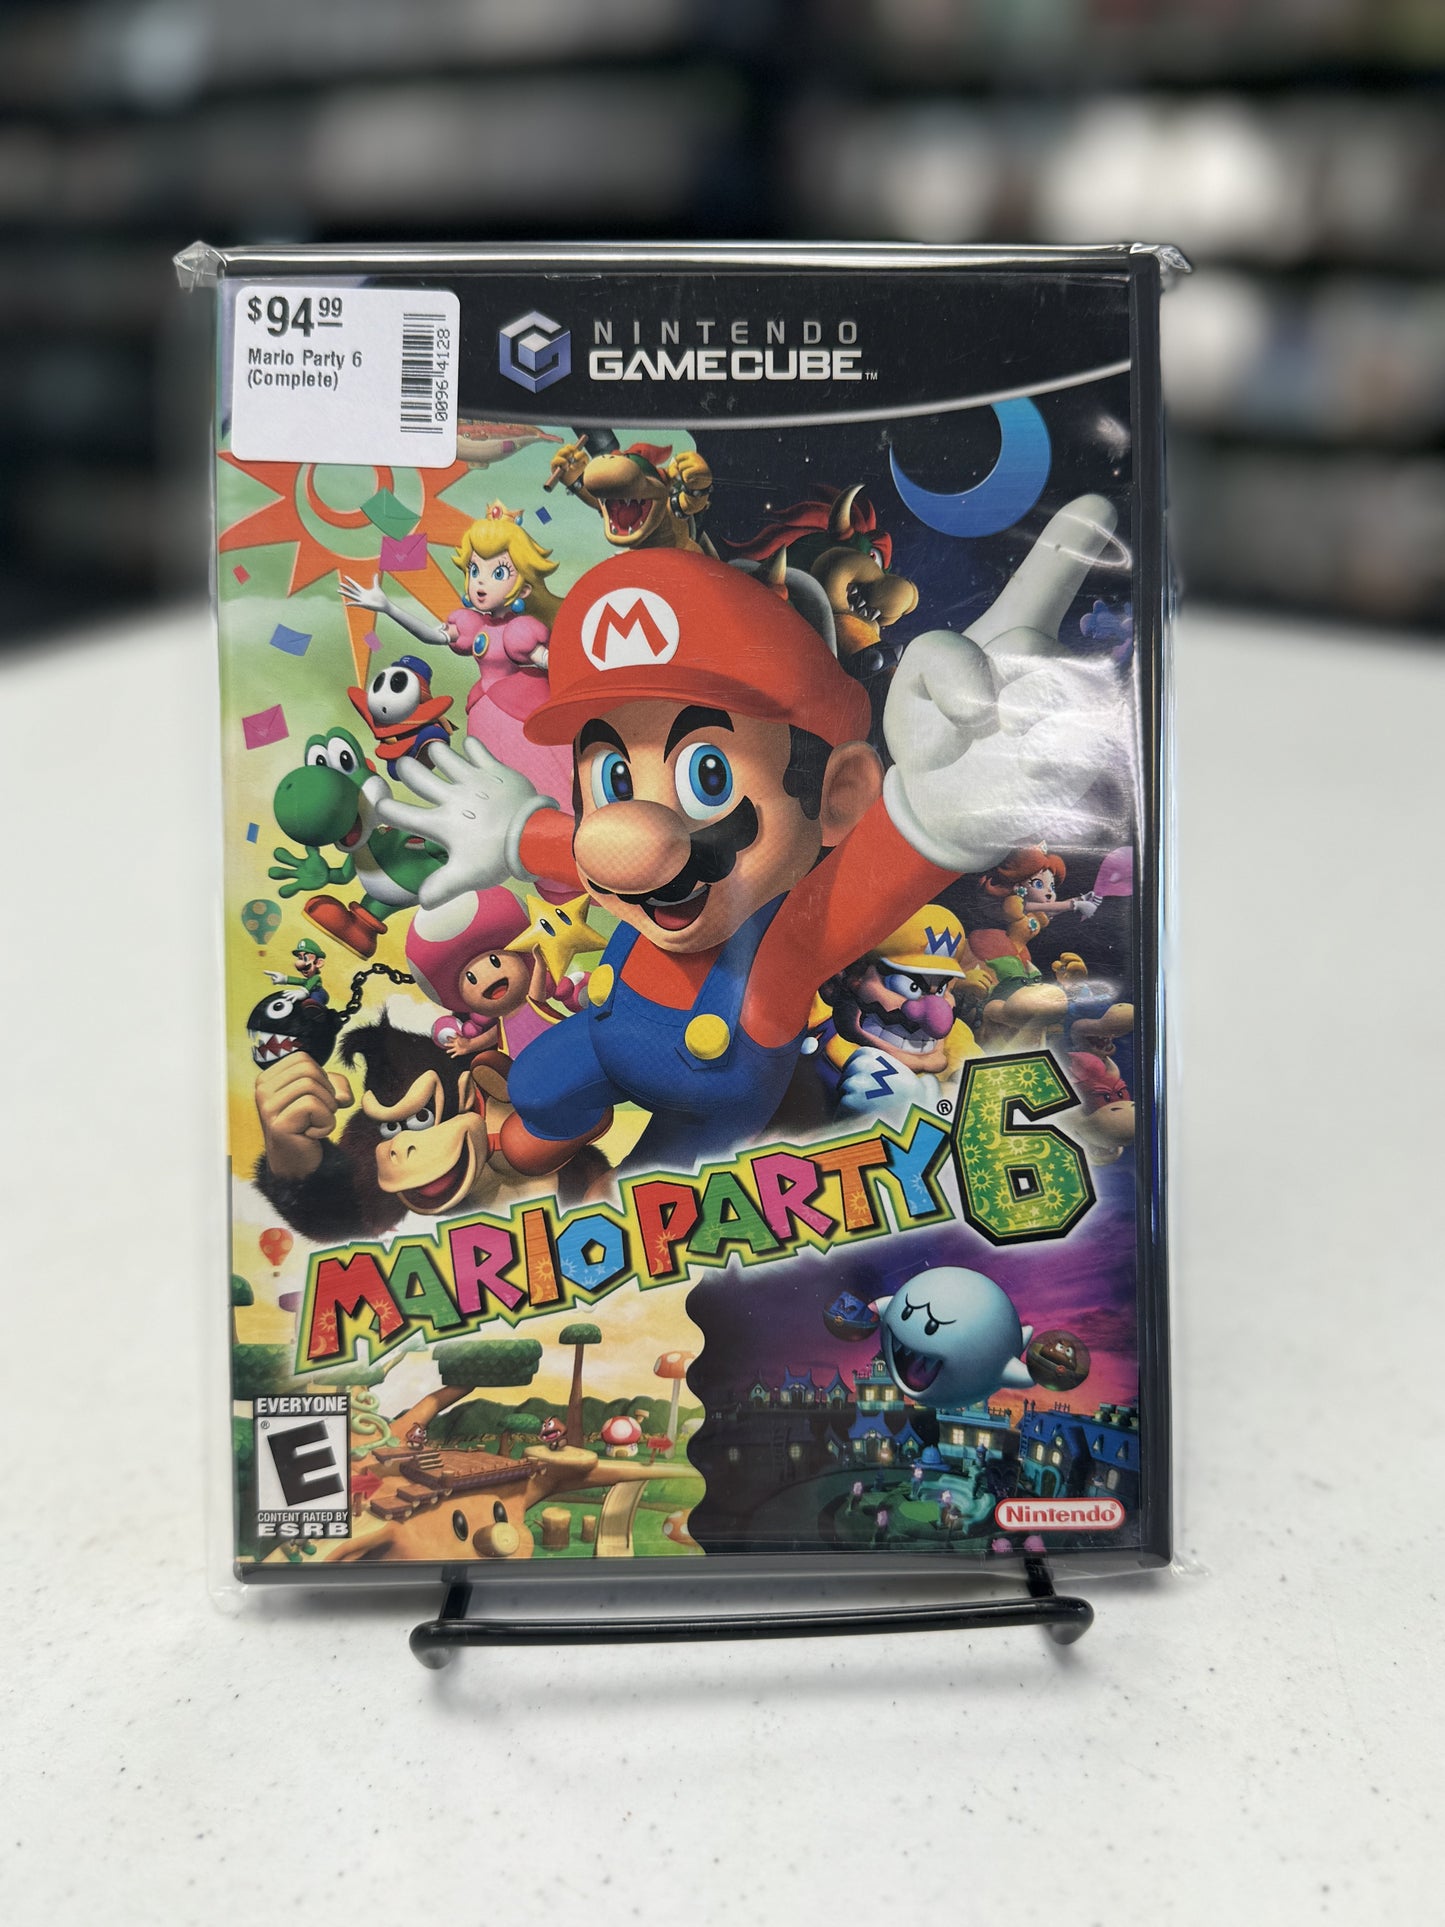 Mario Party 6 (Complete)